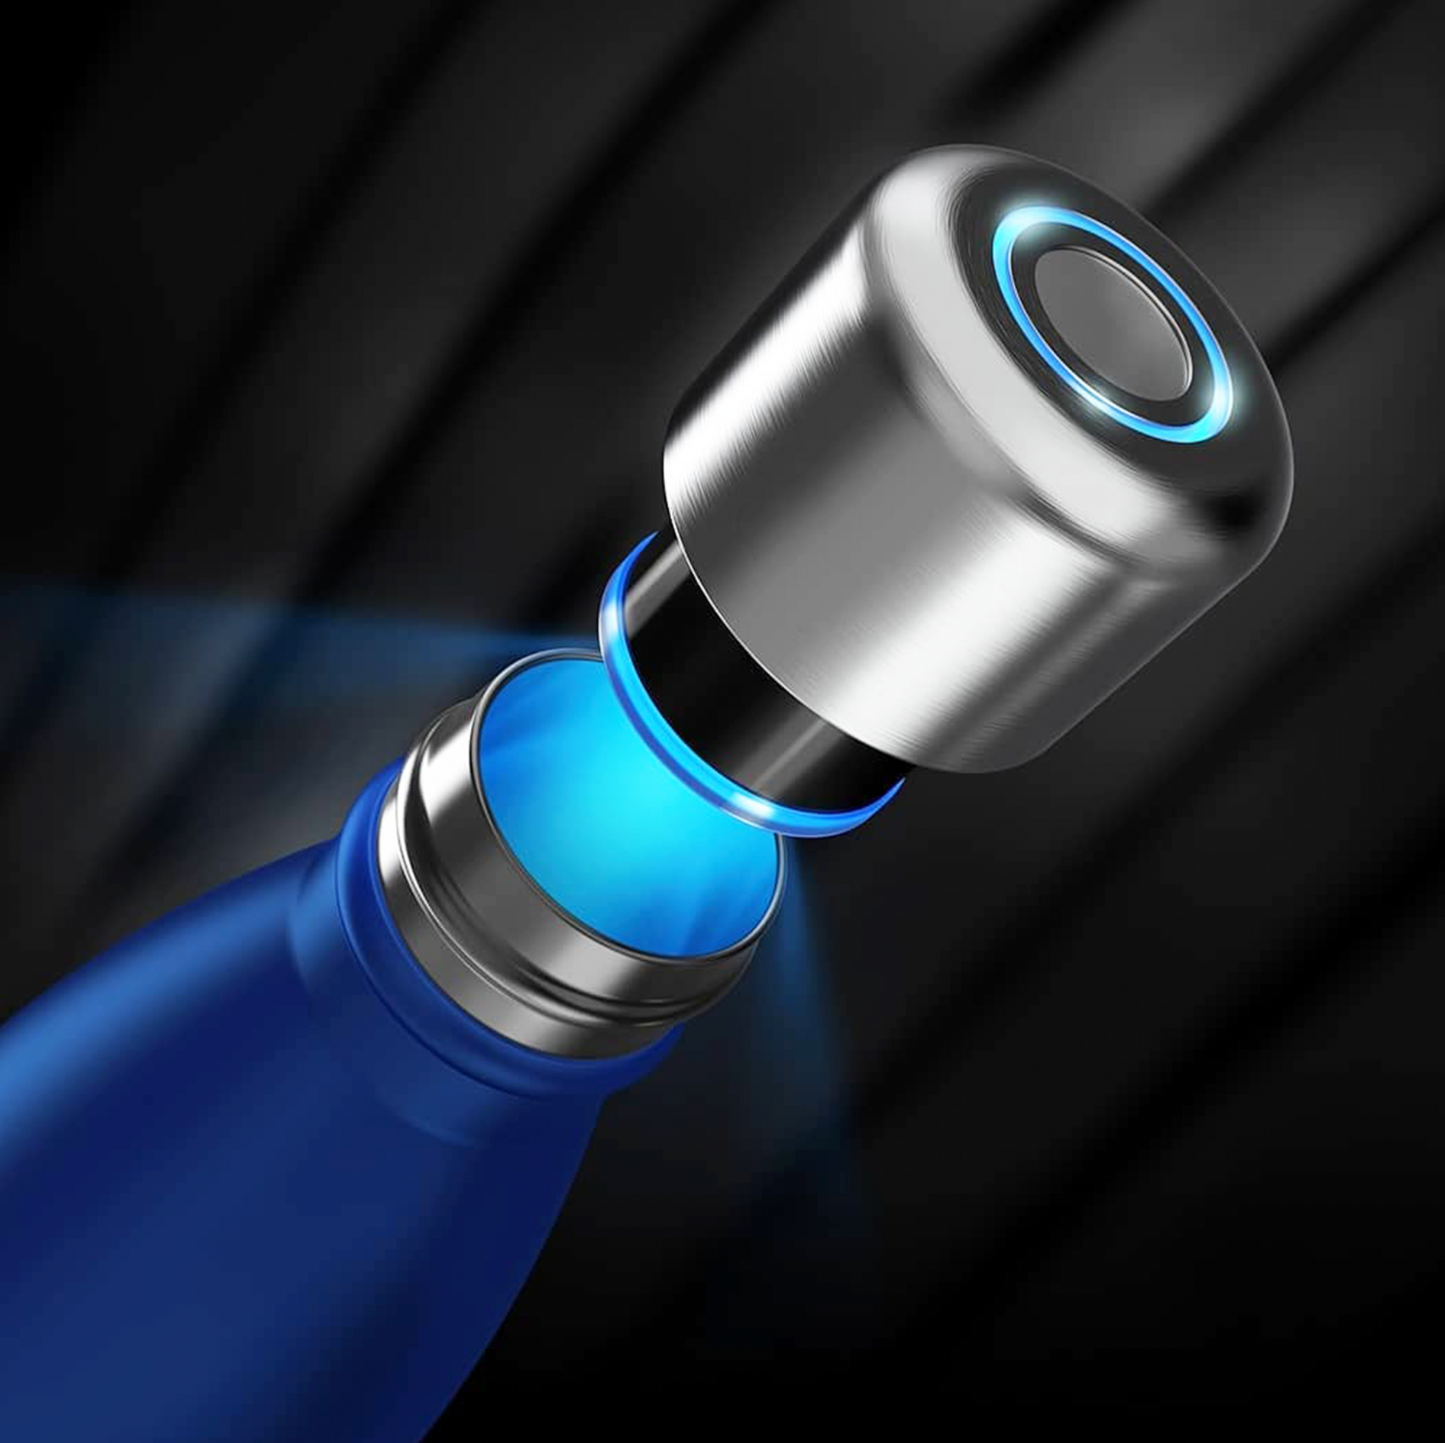 Lincoln | Smart-Bottle™